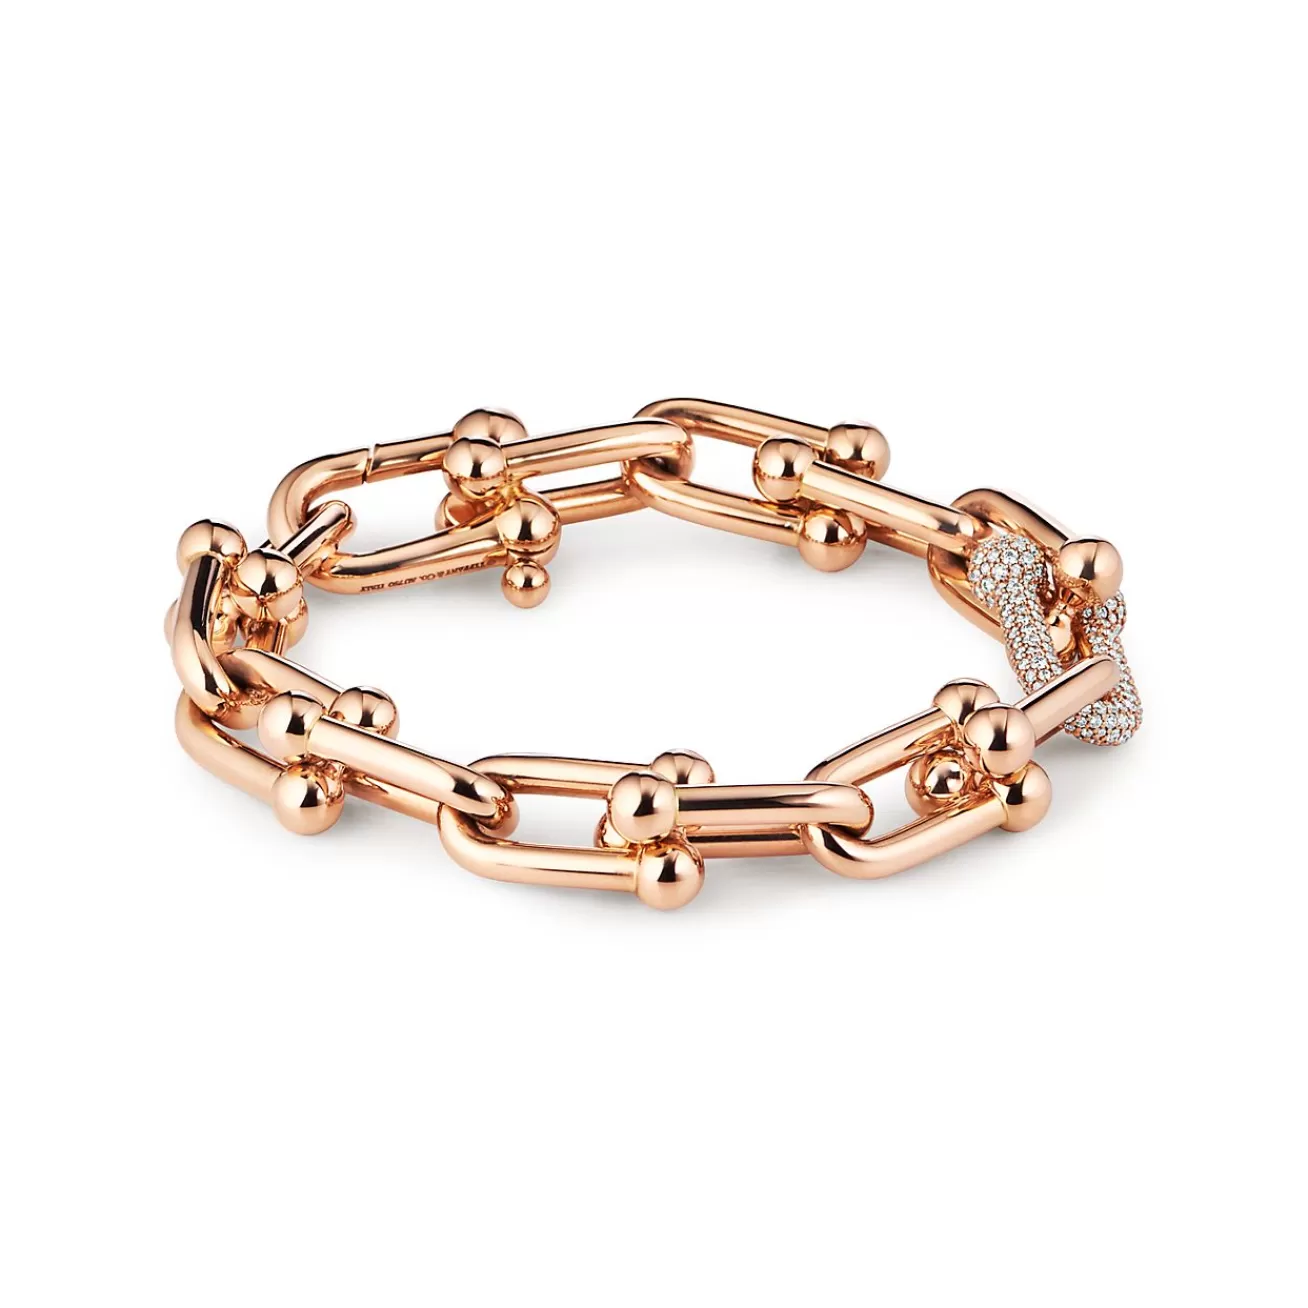 Tiffany & Co. Tiffany HardWear Large Link Bracelet in Rose Gold with Diamonds | ^ Bracelets | Men's Jewelry